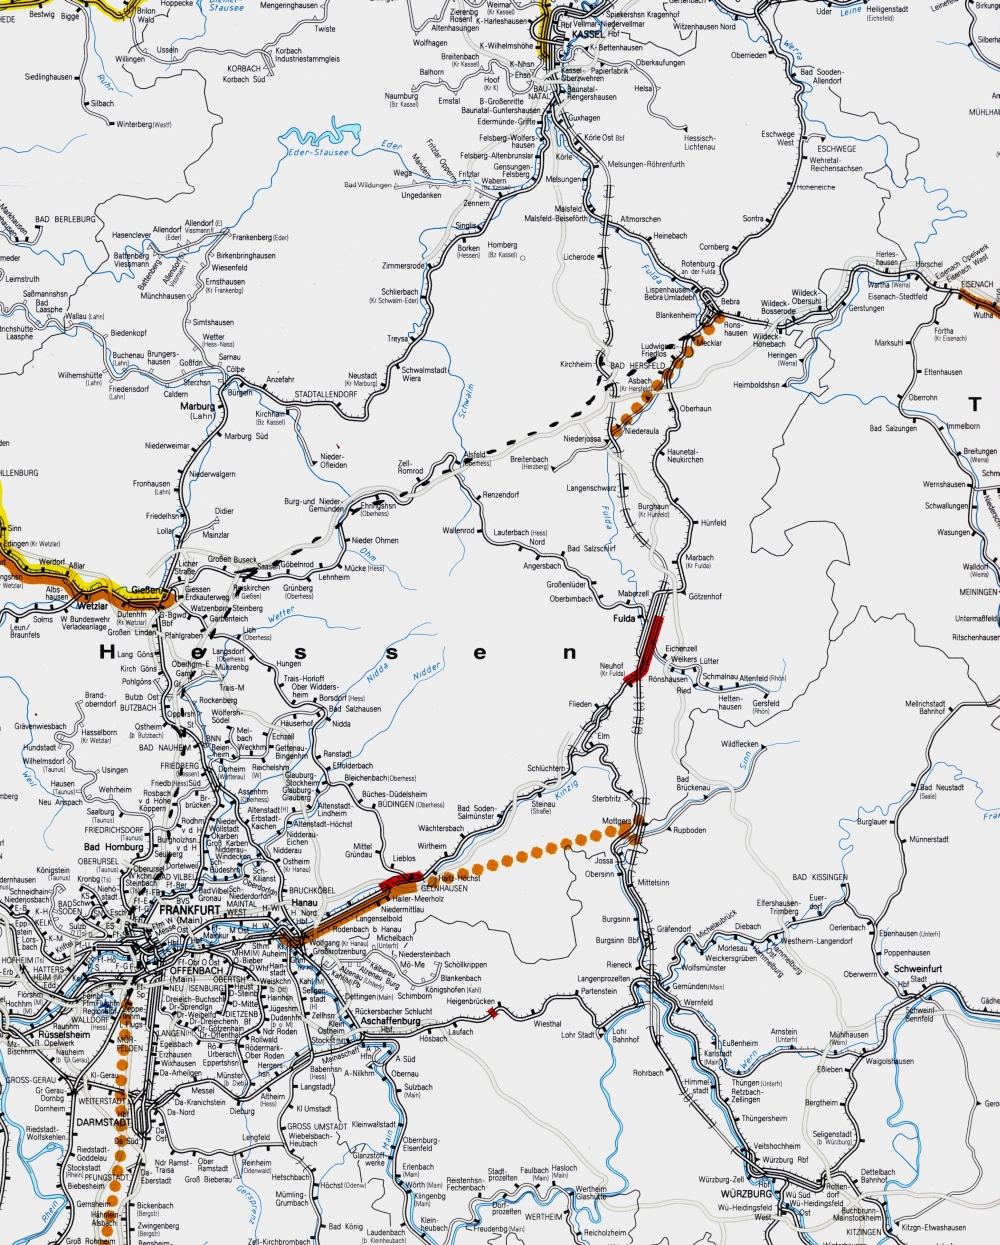 Denkbare Neukonzeption der Eisenbahnstrecke ABS/NBS Hanau - Fulda / Würzburg Erfurt Seite 6 1.4 Skizze: Das Projekt im Vergleich zu den Planungen des BVWP 2003 bzw.